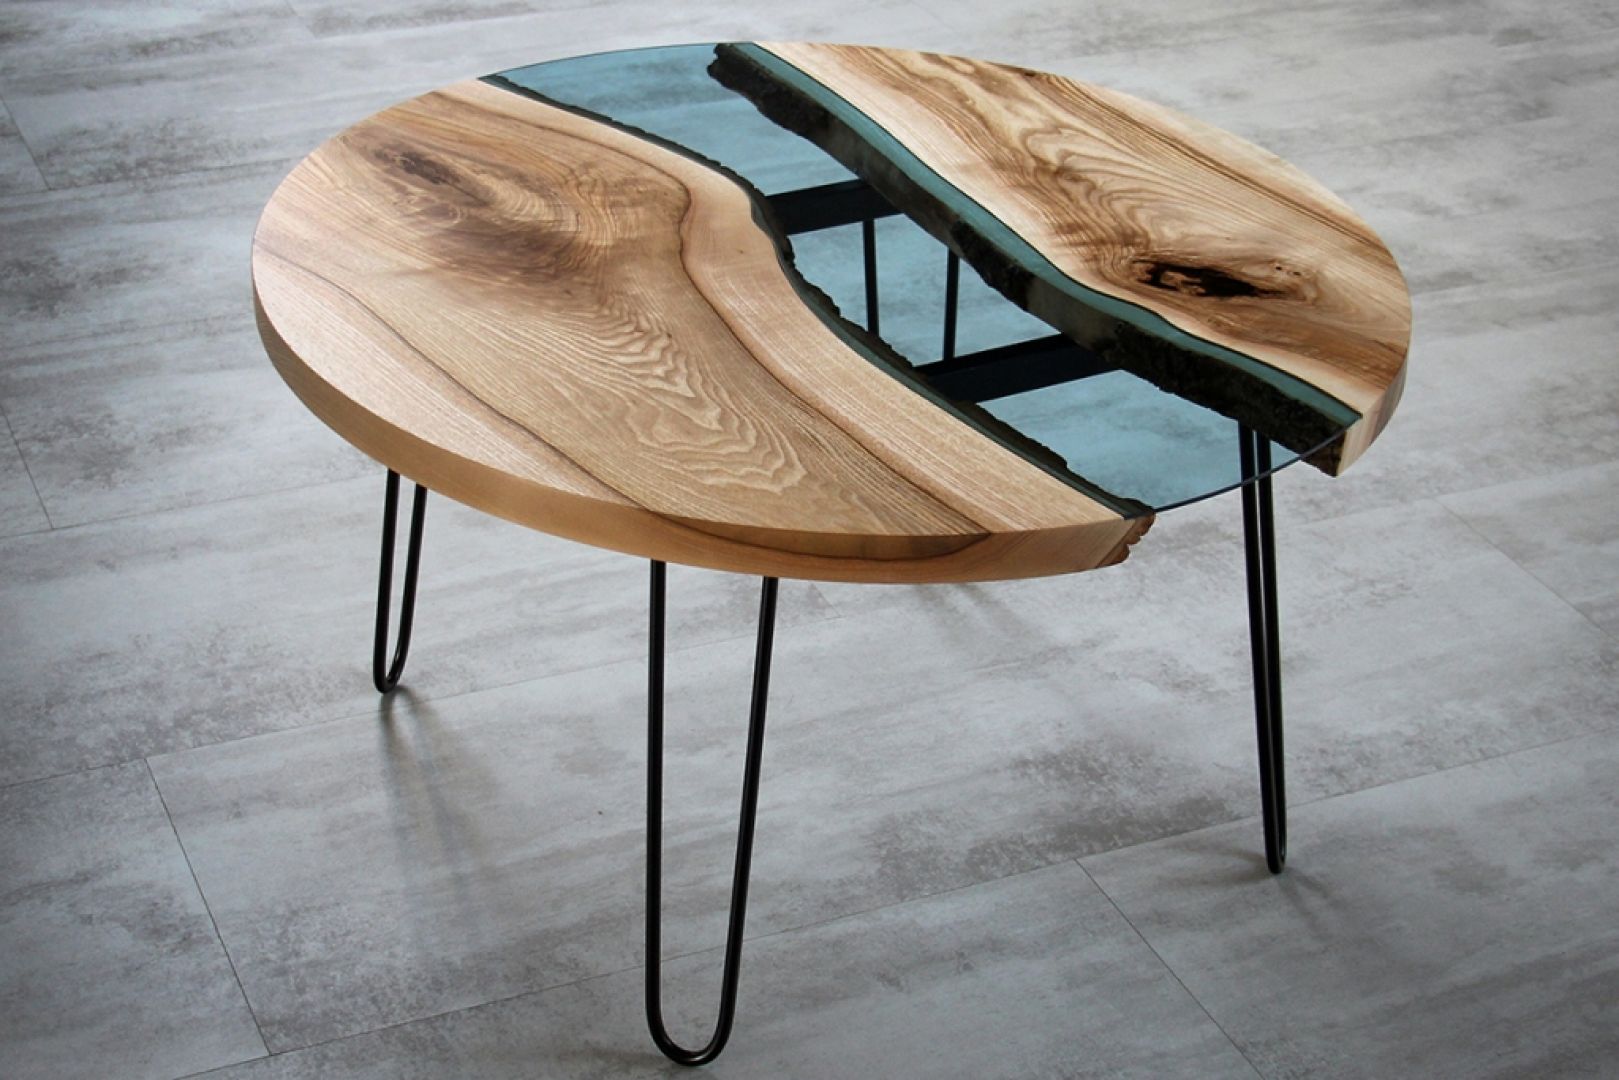 Stół marki Malita Just Wood z błękitnym szkłem wkomponowanym w drewniany blat. Fot. Malita Just Wood